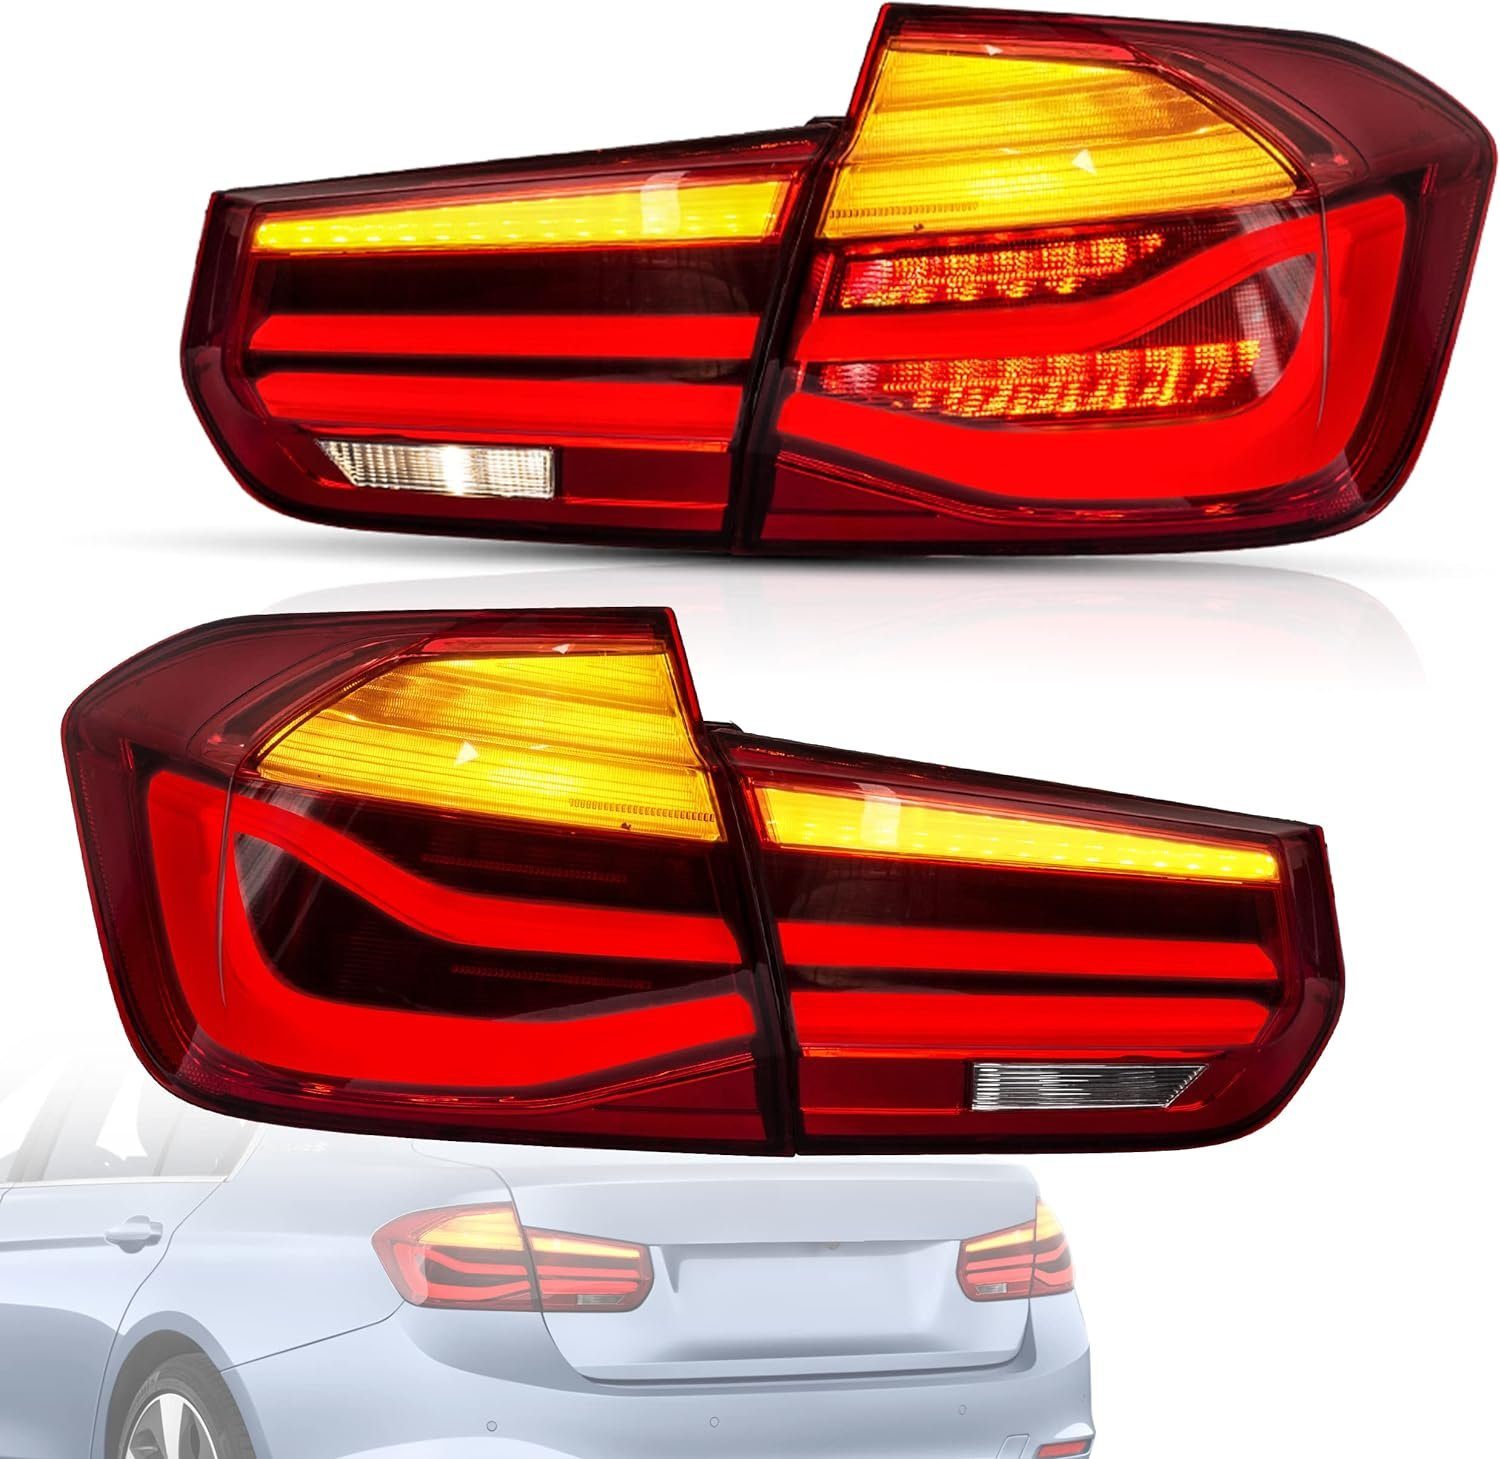 LLCTOOLS Rückleuchte Hell leuchtende LED Rückleuchte mit E-Prüfzeichen passend für BMW, 3er F30 Limousine, F35 Limousine, F80 M3 (10/2011-06/2019), Rücklicht, Bremslicht, Blinklicht und Rückfahrlicht, LED fest integriert, Voll LED, Dynamischer Blinker, Hochwertiges LED Rücklicht Auto mit Bremsfunktion